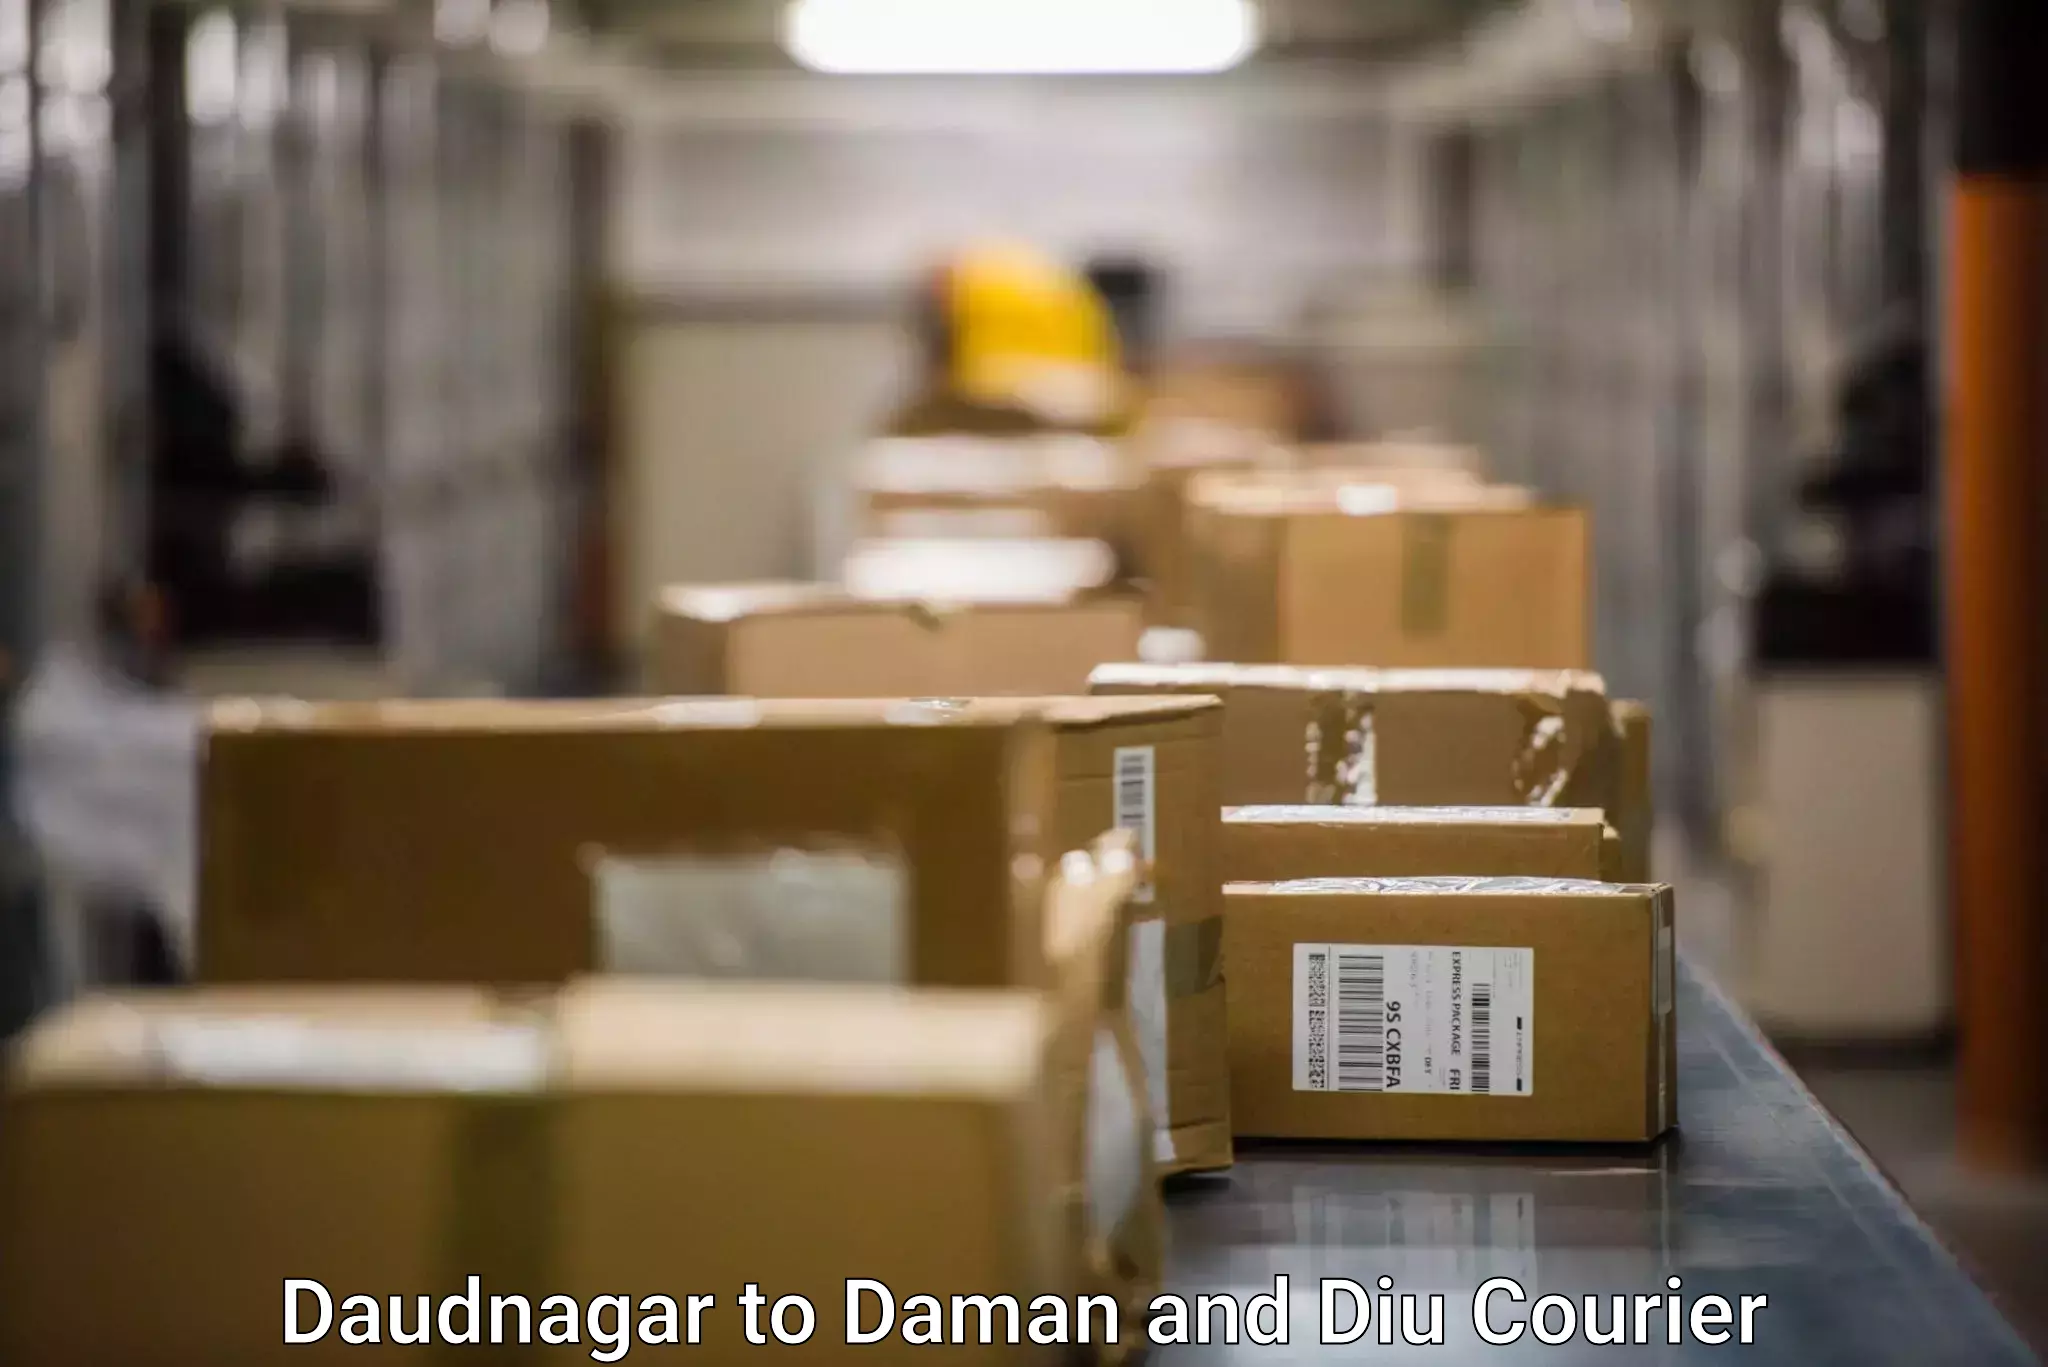 Cargo courier service Daudnagar to Diu